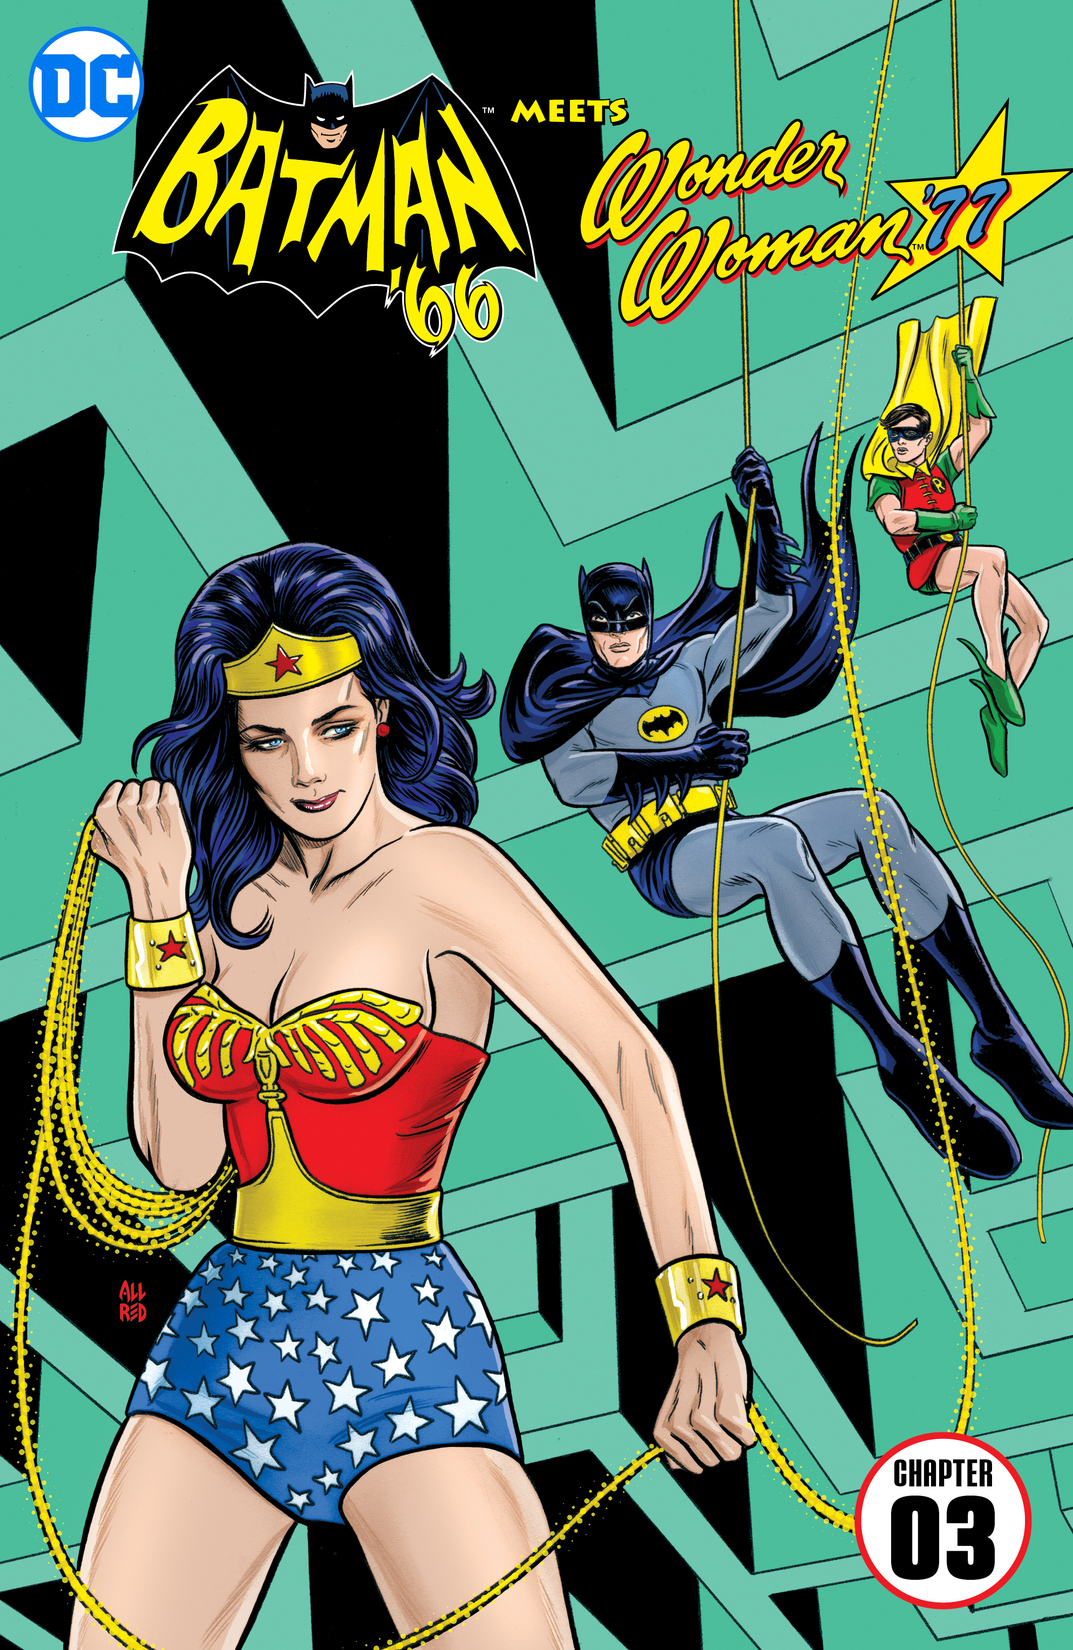 Batman '66 Meets Wonder Woman '77 #3 preview images